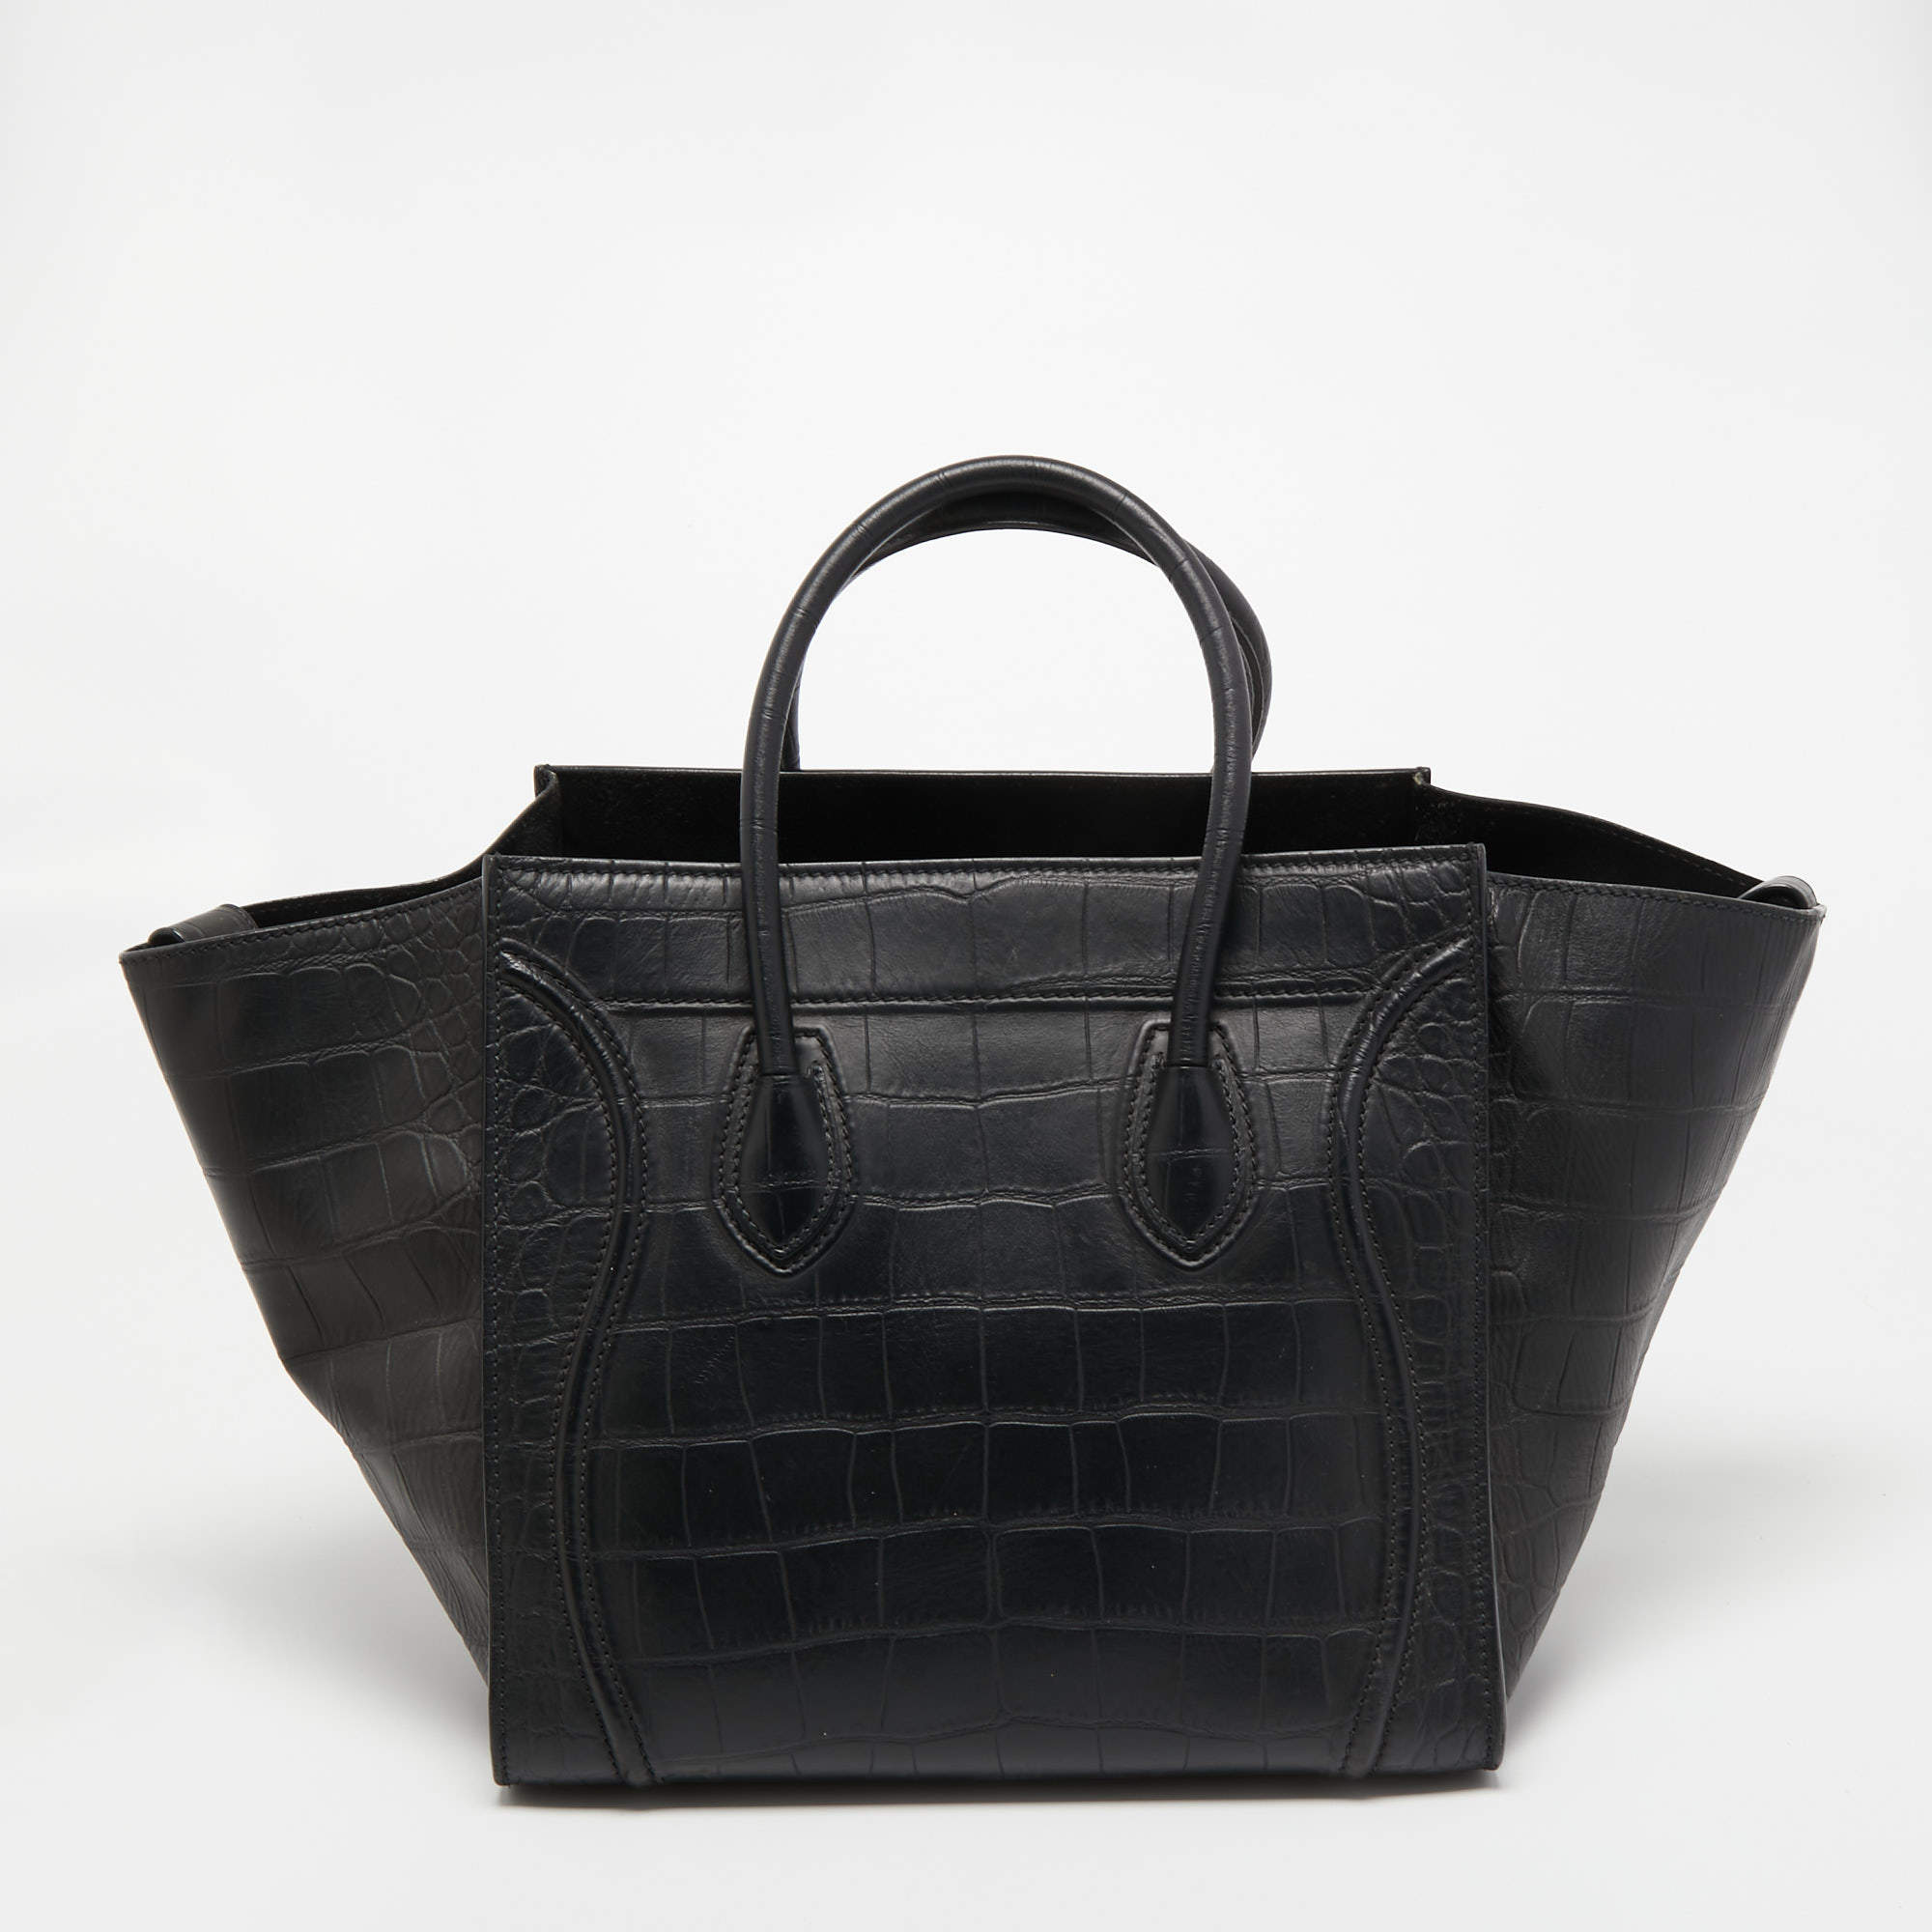 Celine Black Croc Embossed Leather Medium Phantom Luggage Tote Bag